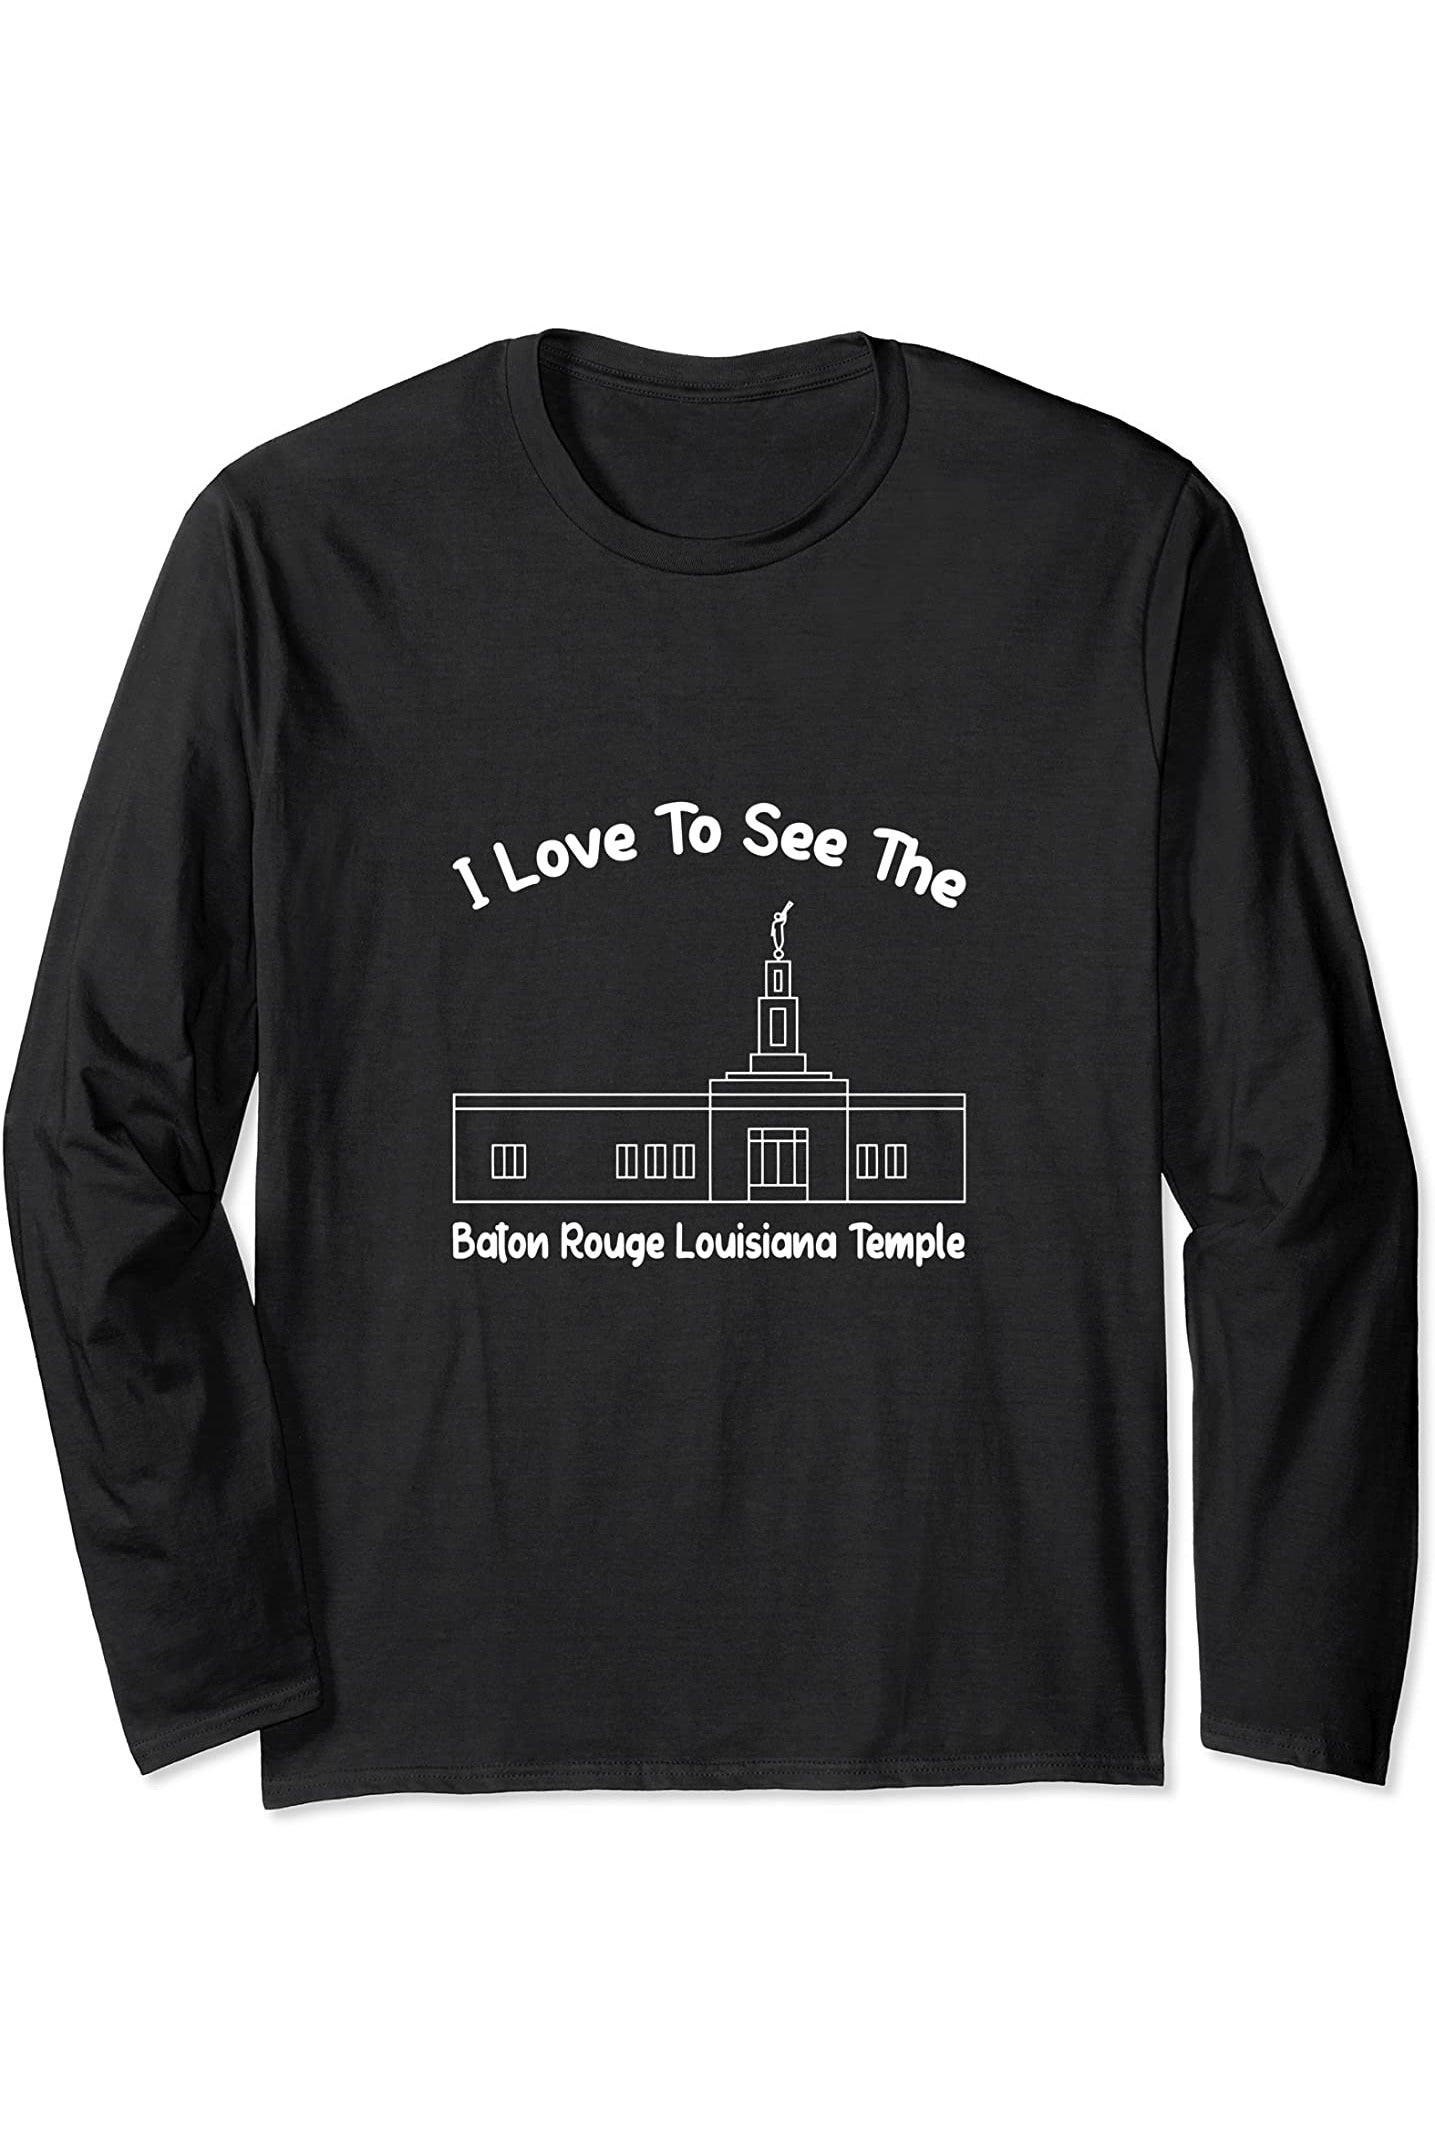 Baton Rouge Louisiana Temple Long Sleeve T-Shirt - Primary Style (English) US